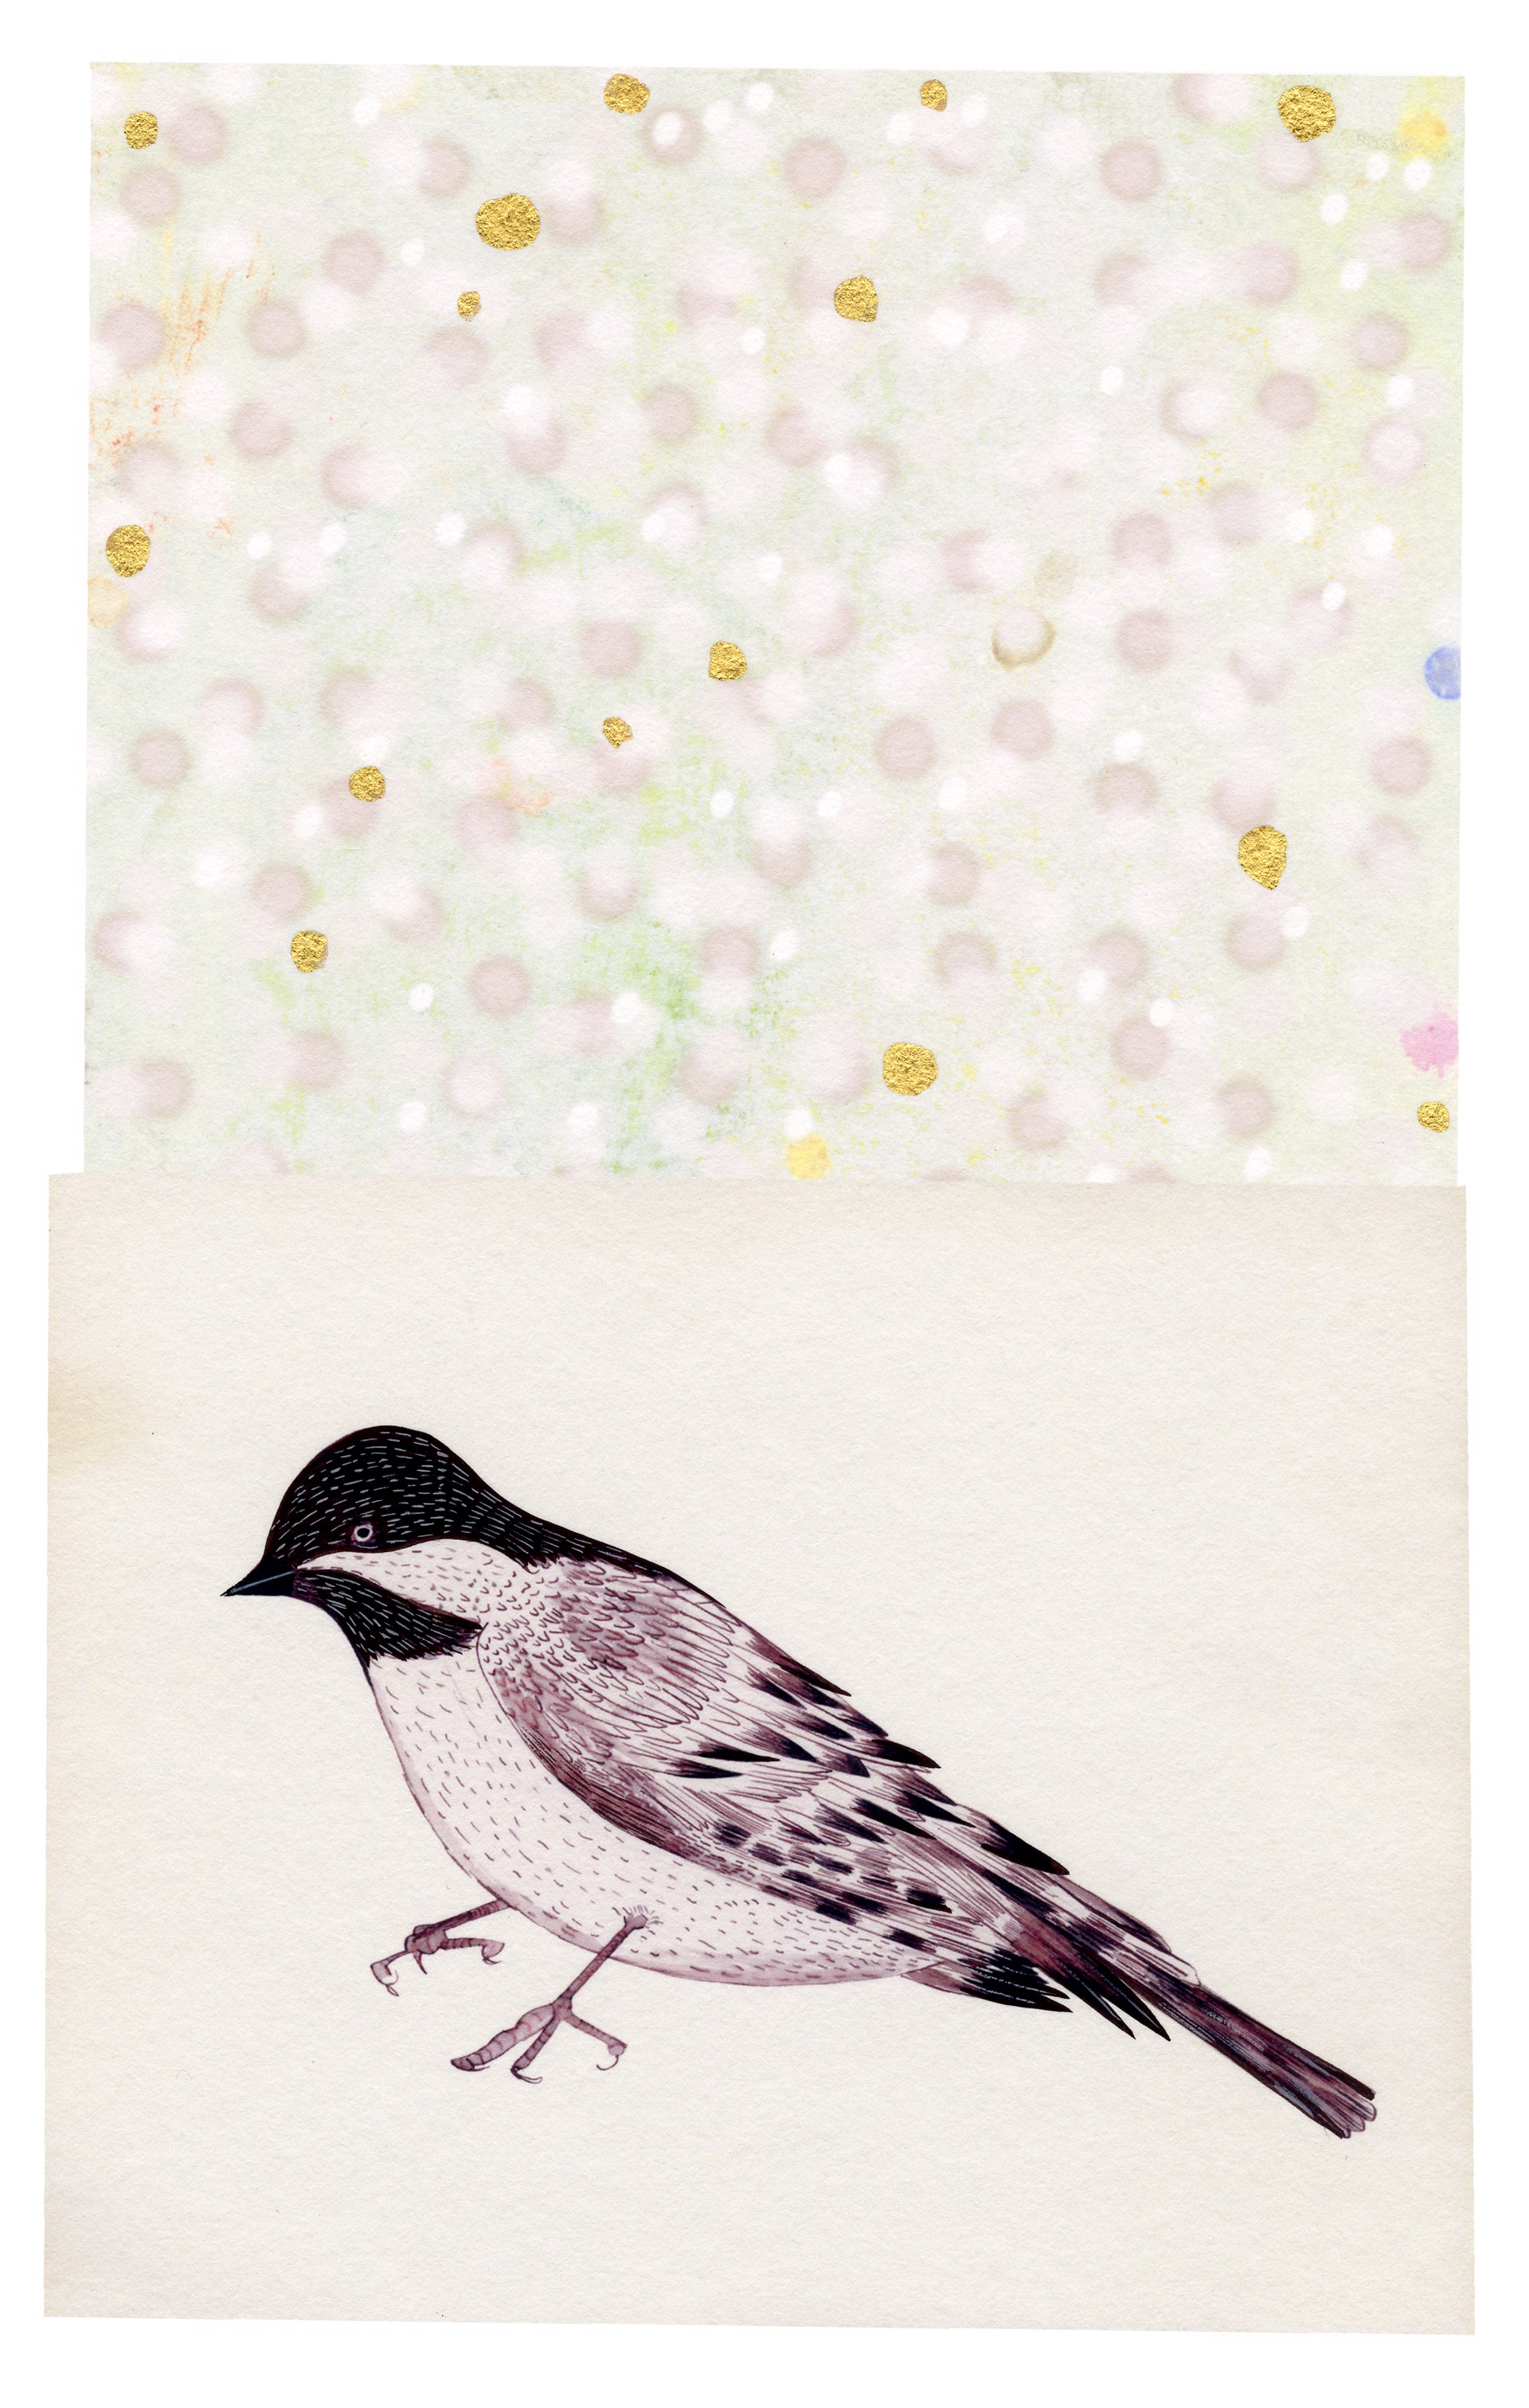 Bird on White by Anne Smith